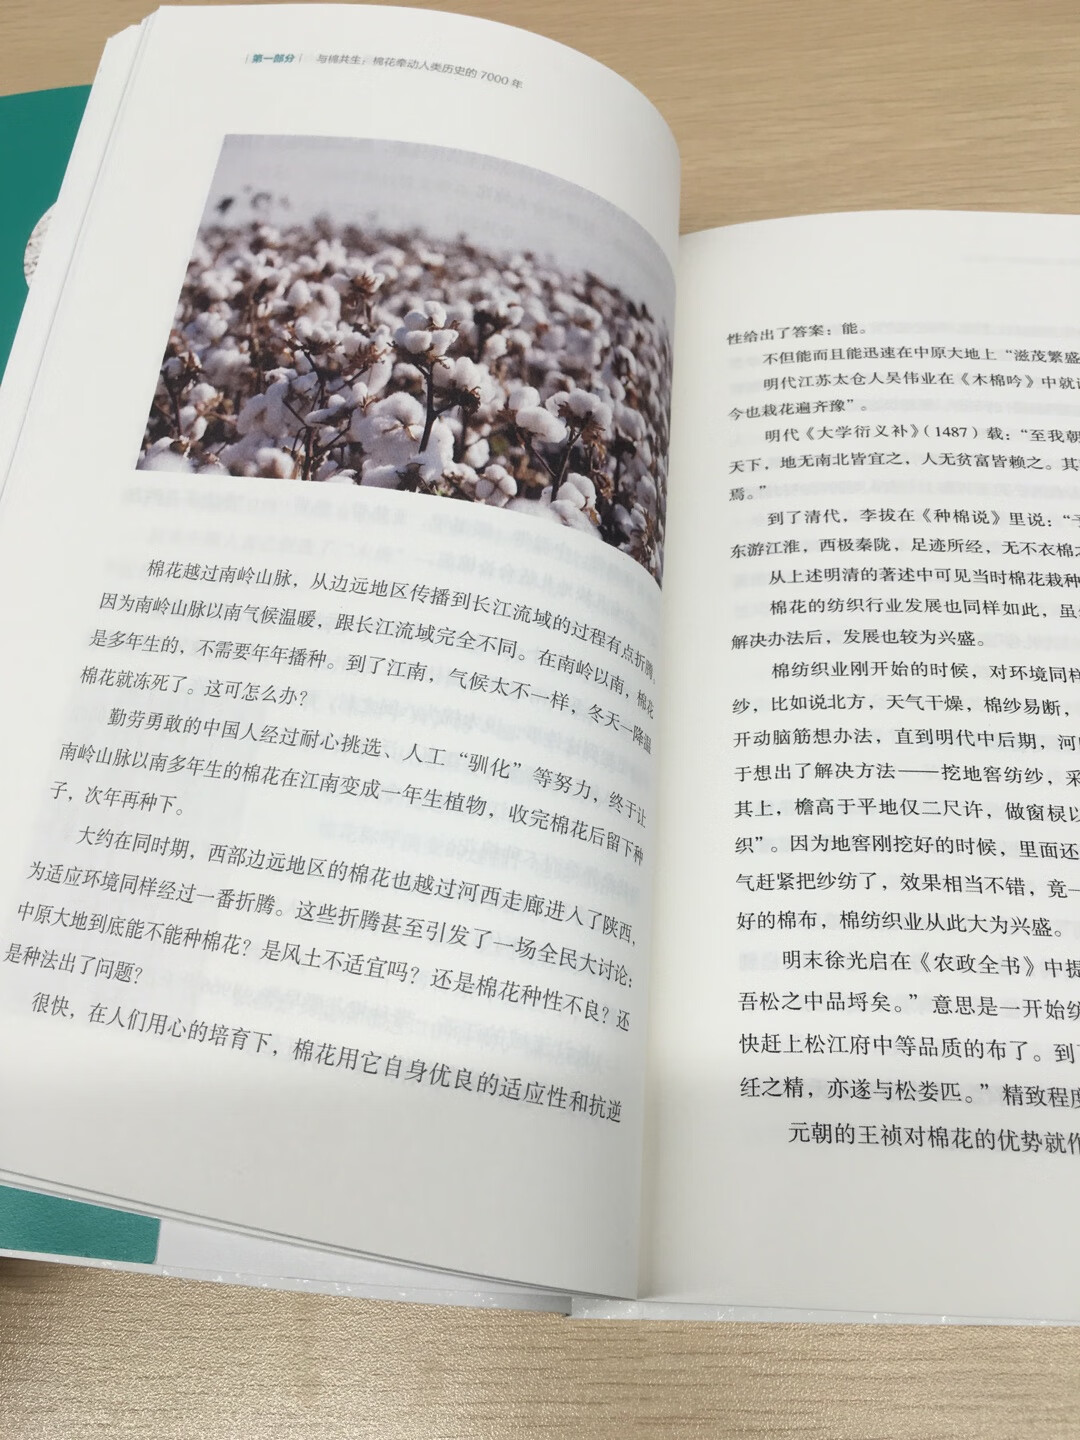 以前见过弹棉花、棉被，原来棉花是从国外传来的，现在还可以食用，看这本书真是涨姿势。